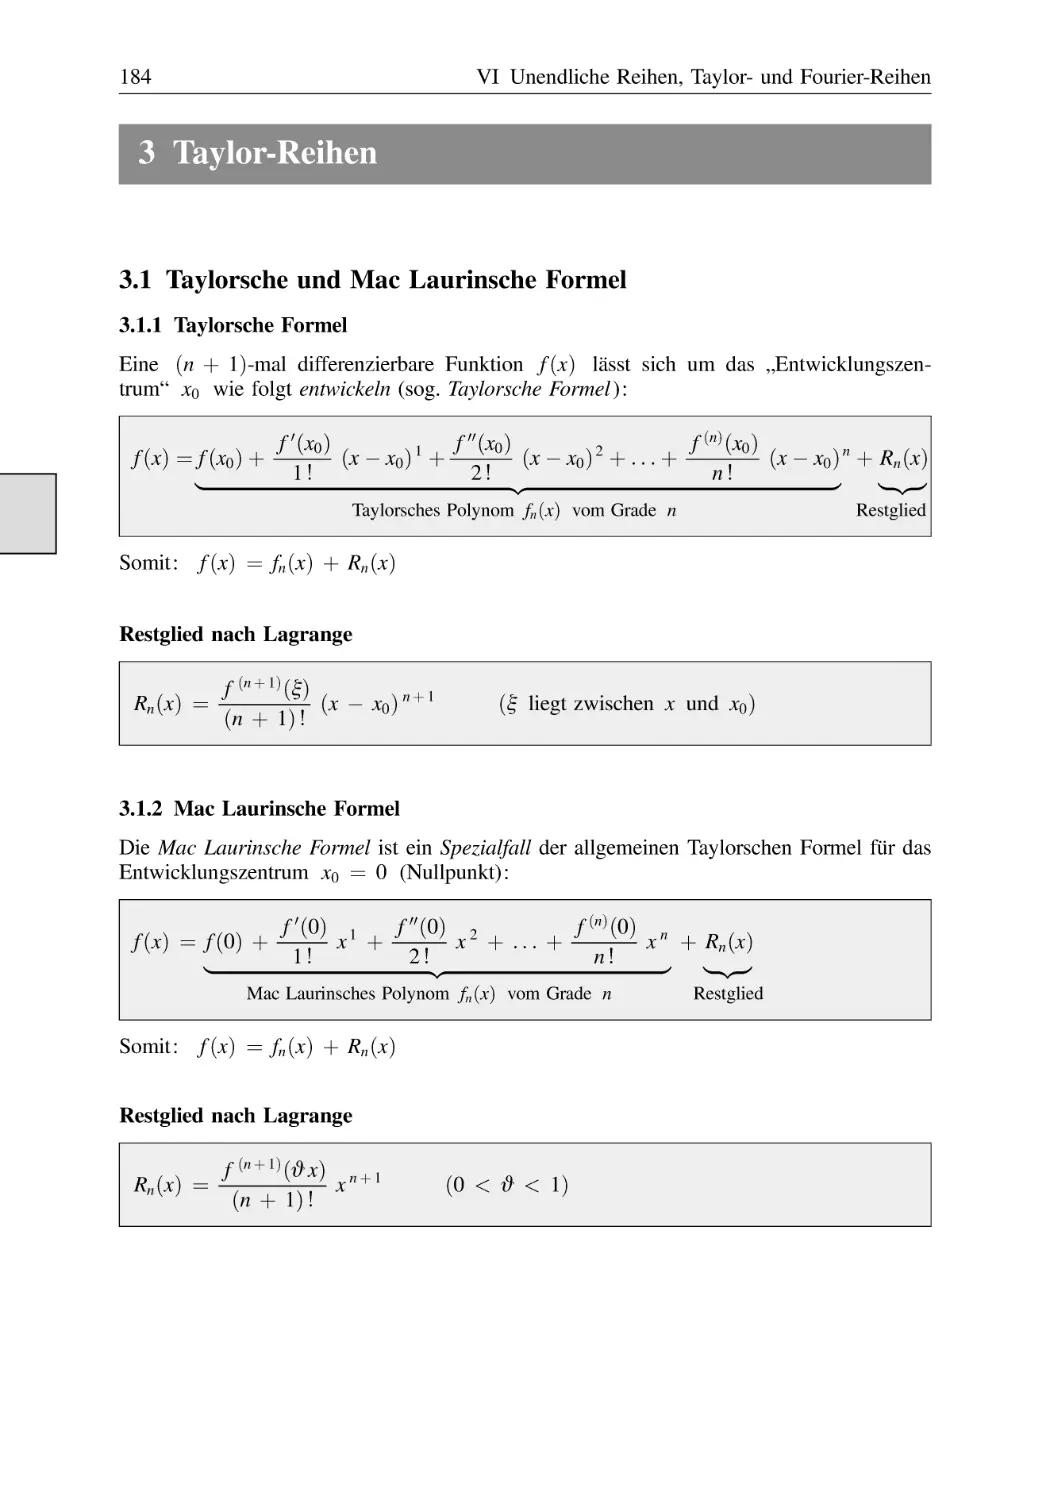 3 Taylor-Reihen
3.1 Taylorsche und Mac Laurinsche Formel
3.1.1 Taylorsche Formel
3.1.2 Mac Laurinsche Formel